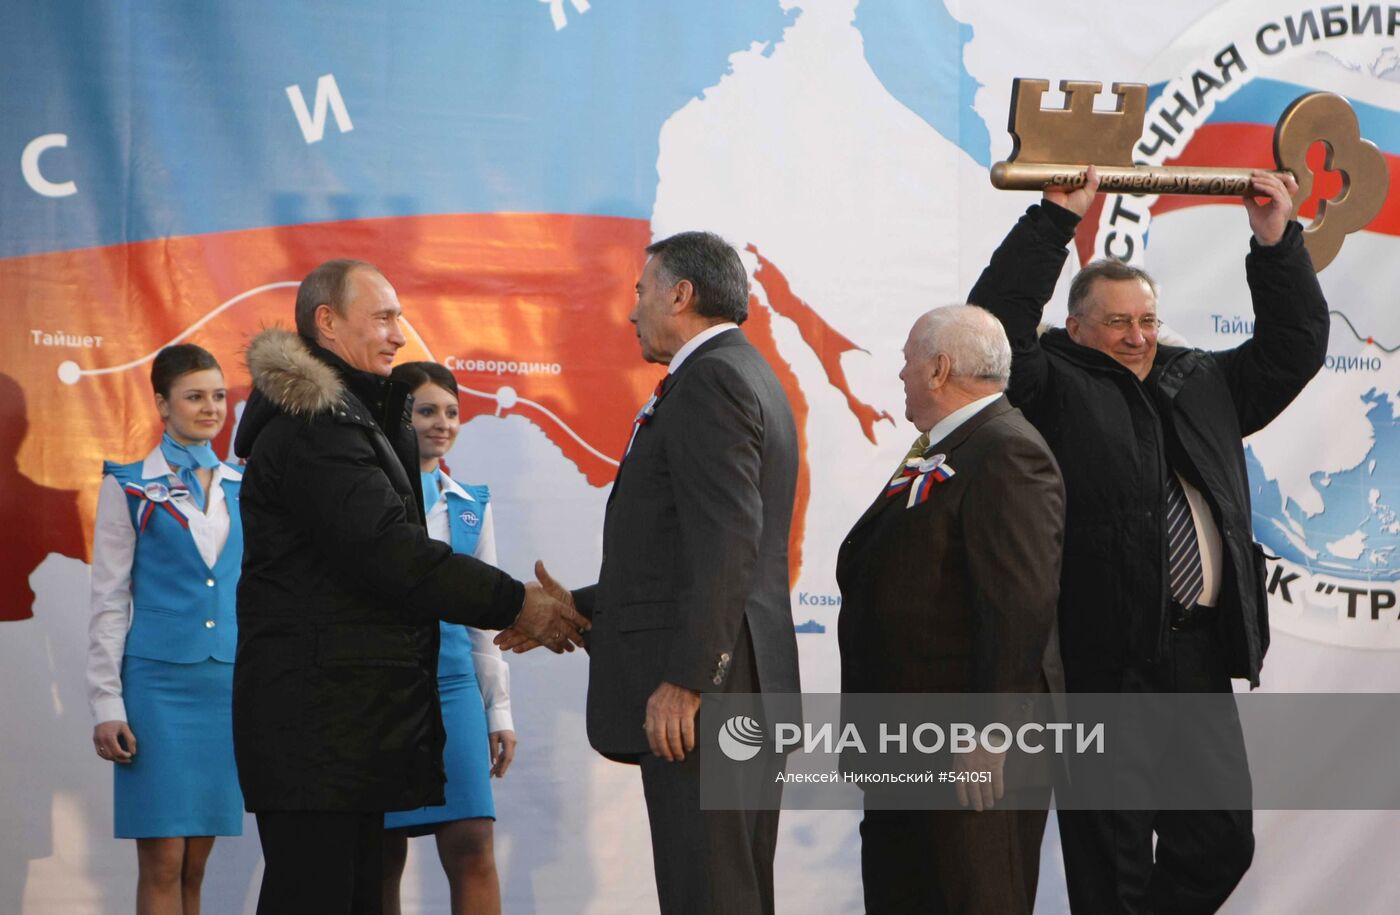 Владимир Путин с рабочей поездкой в Приморье